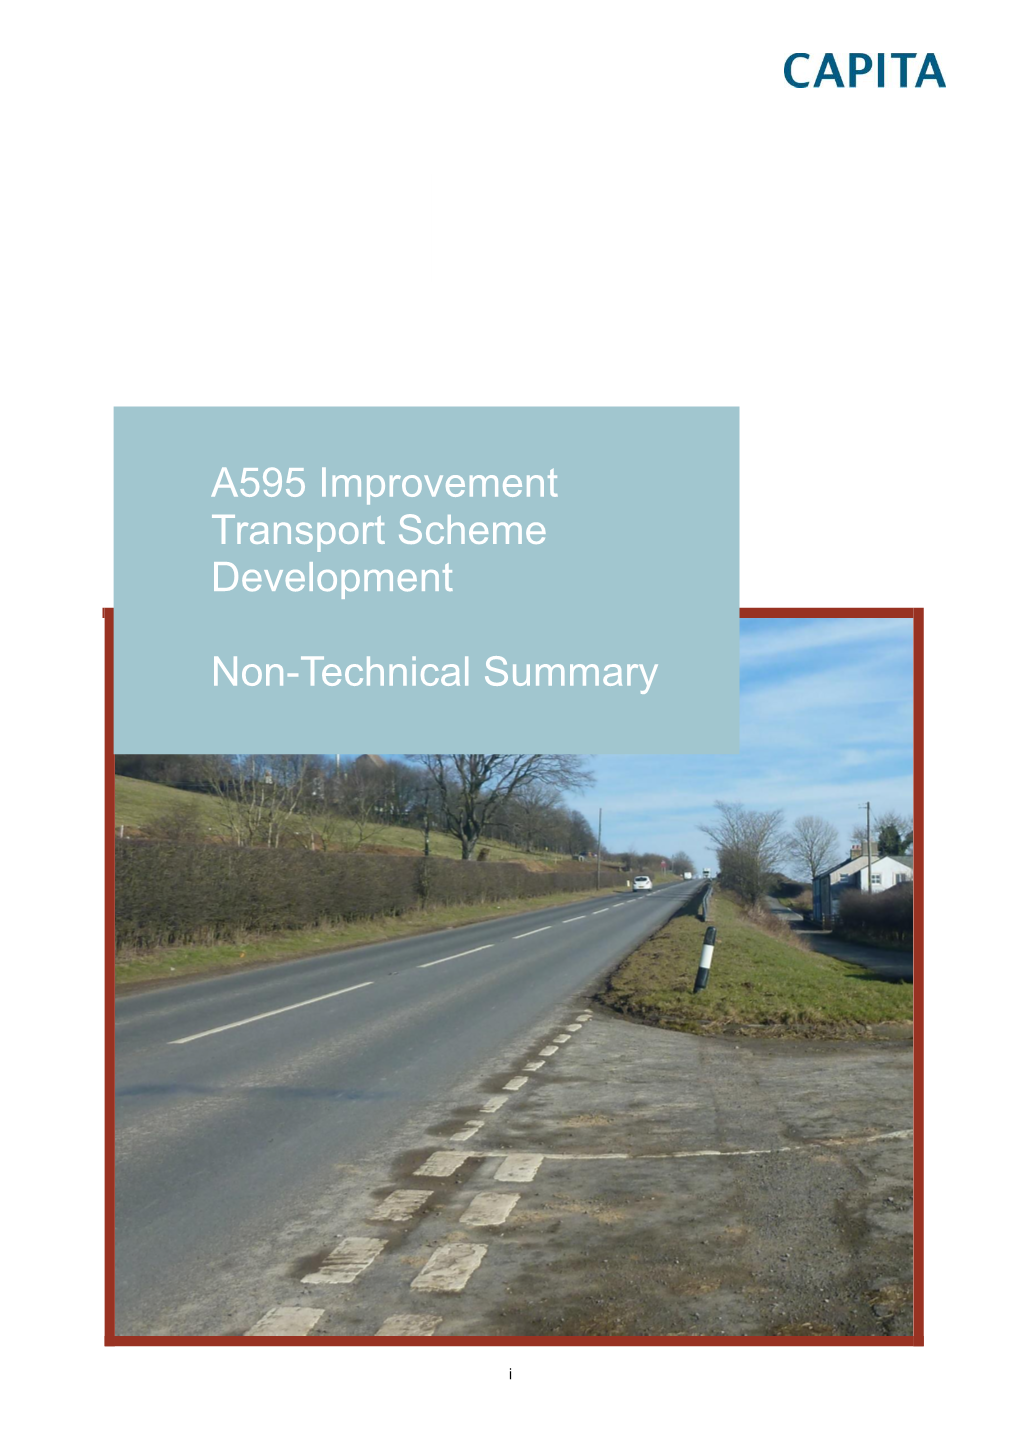 A595 Improvement Transport Scheme Development